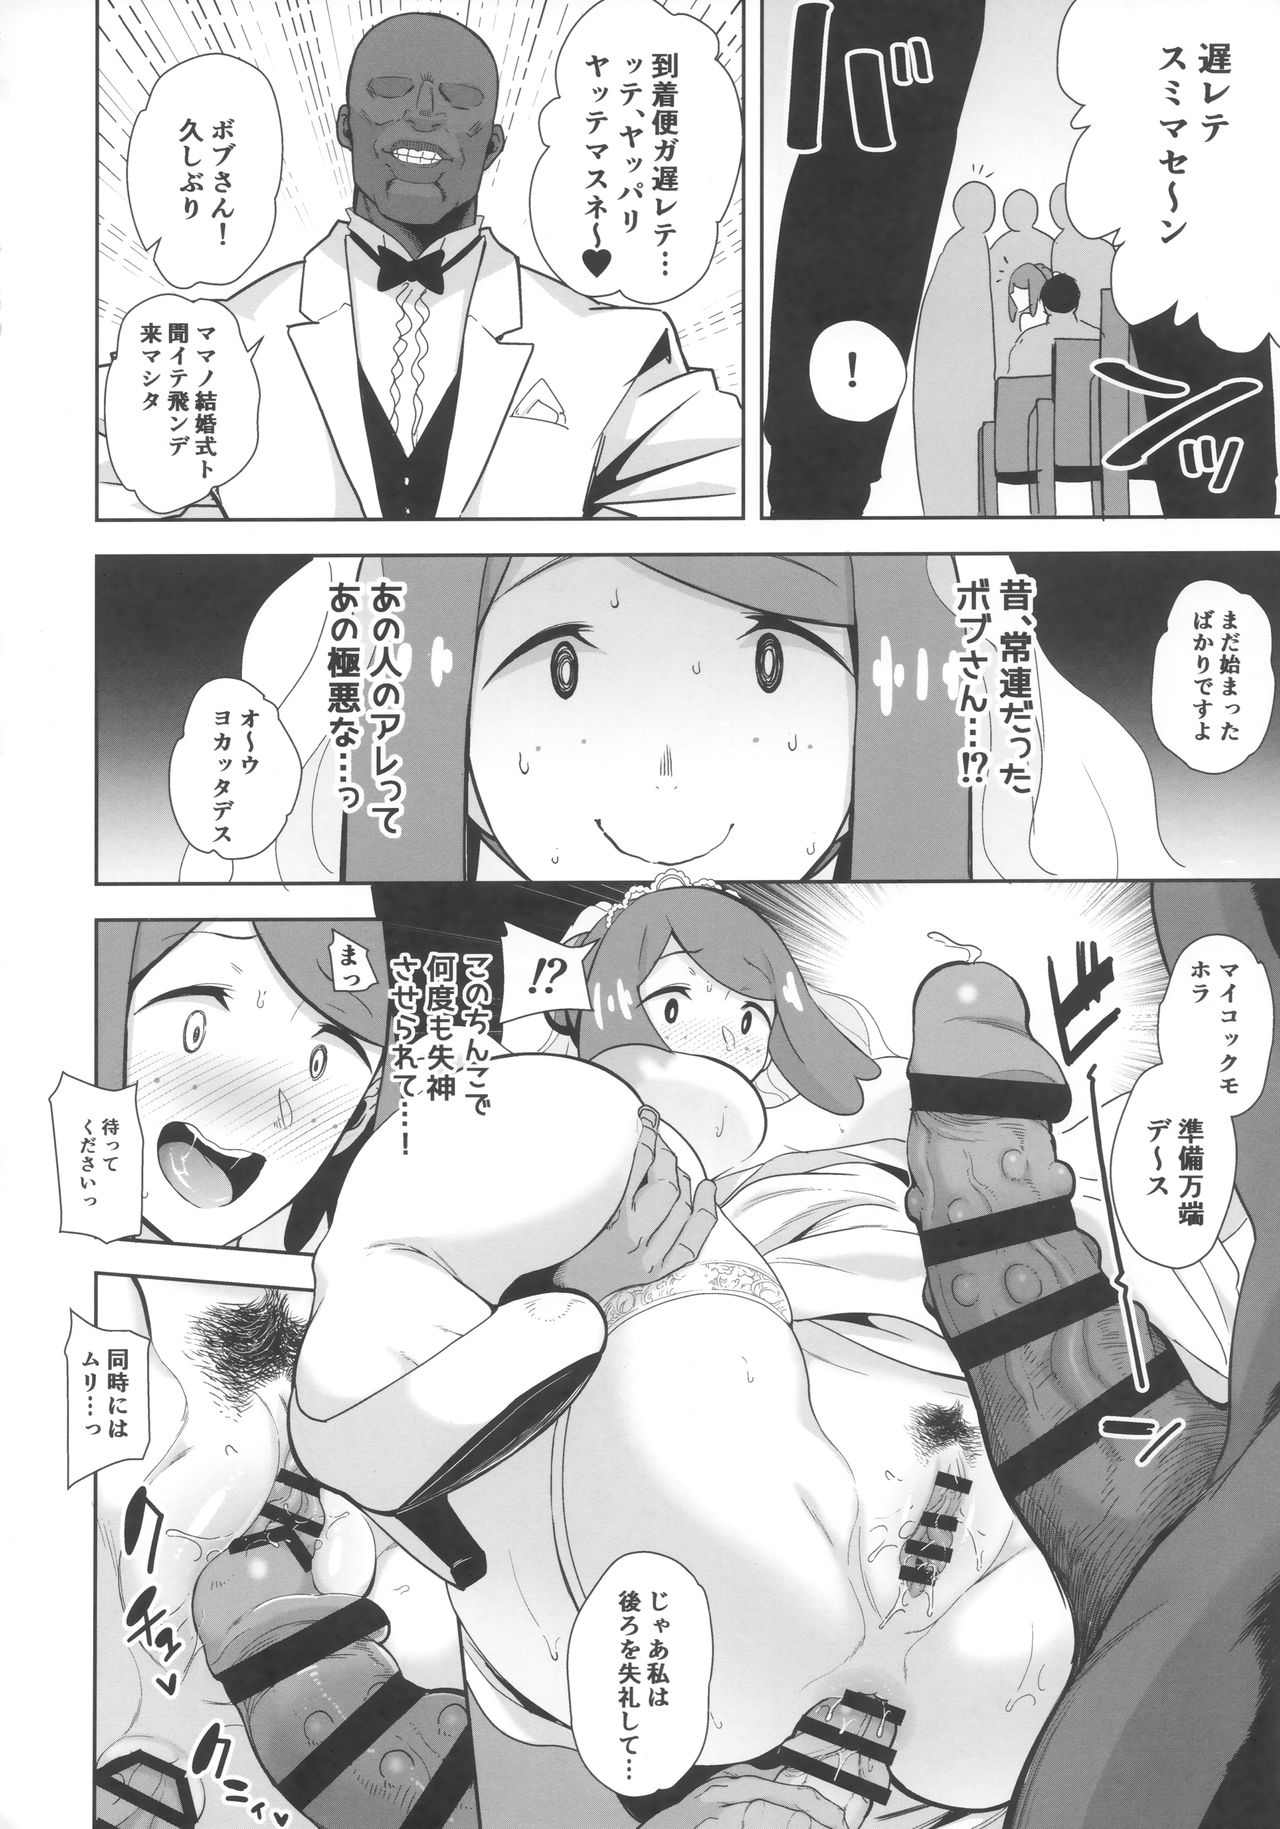 (COMIC1☆16) [DOLL PLAY (Kurosu Gatari)] Alola no Yoru no Sugata 6 (Pokémon Sun and Moon) page 17 full